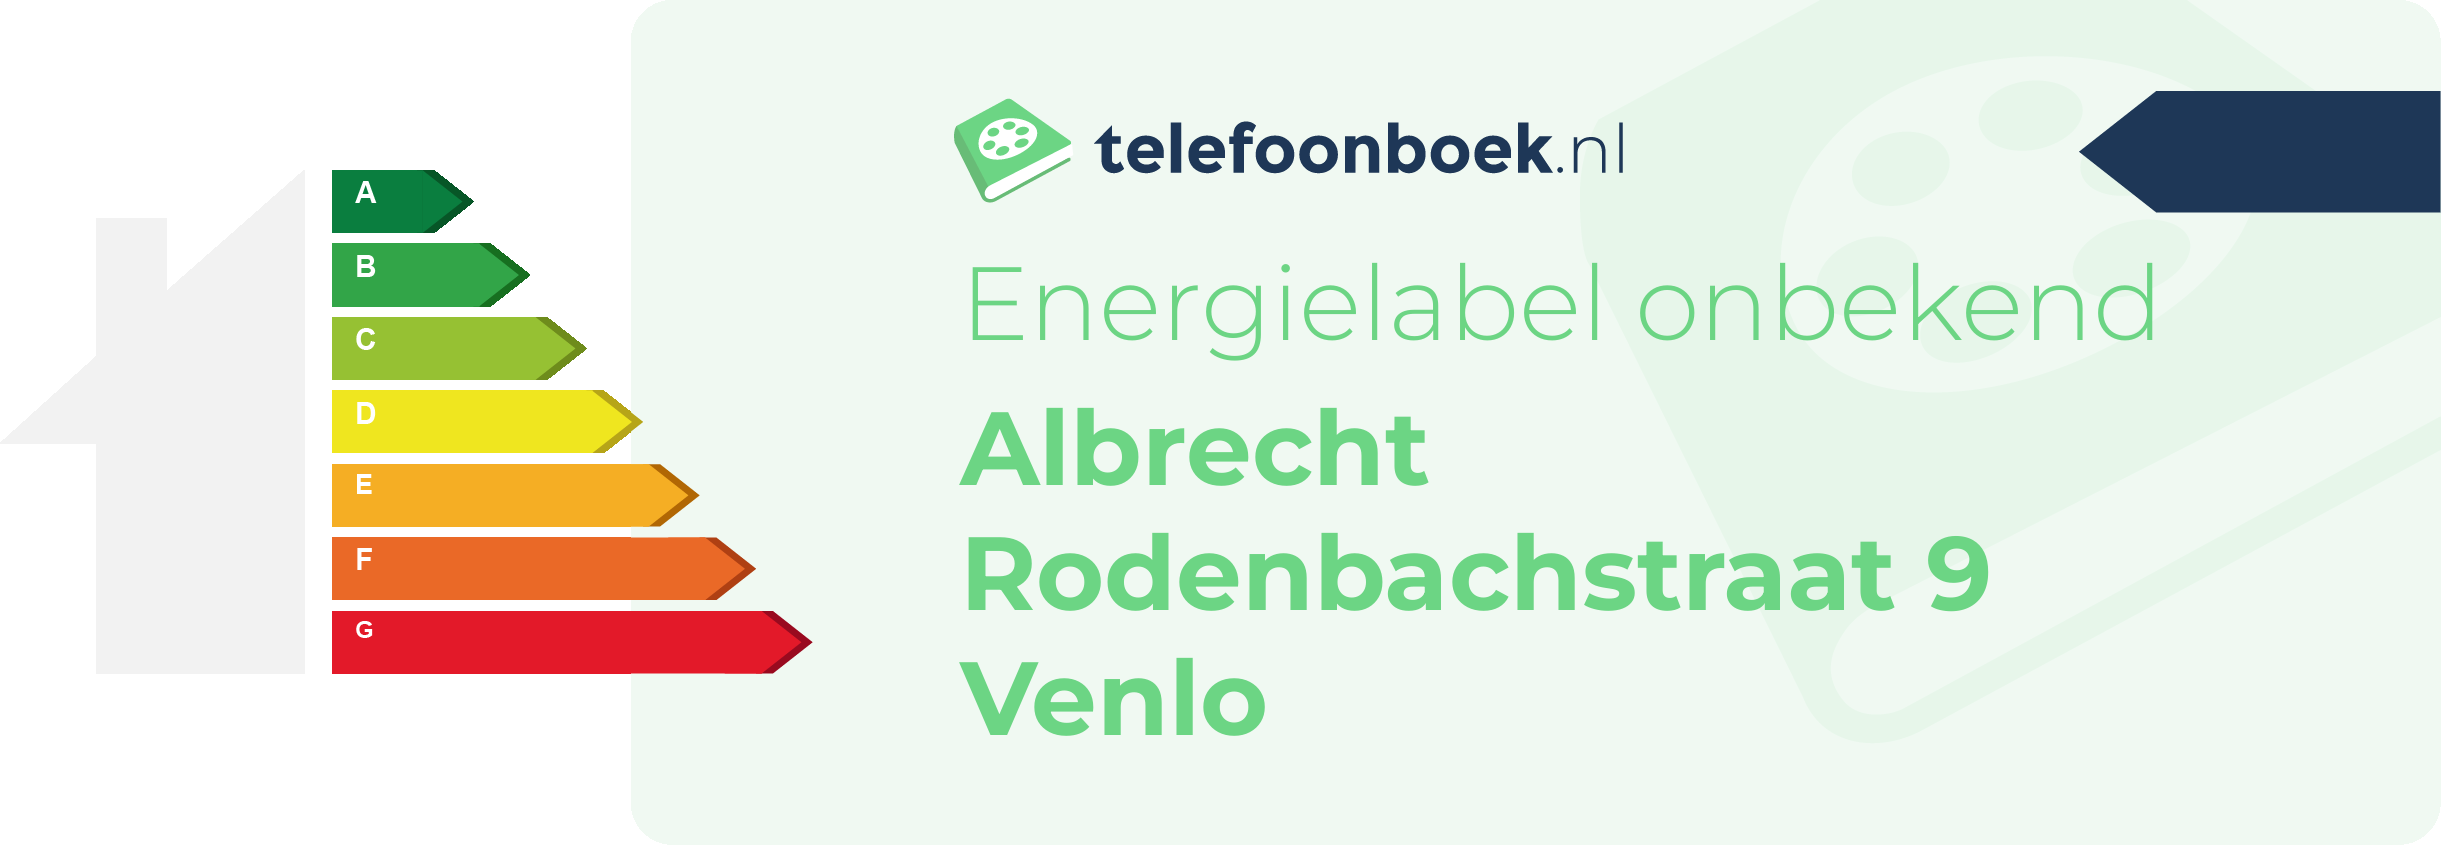 Energielabel Albrecht Rodenbachstraat 9 Venlo